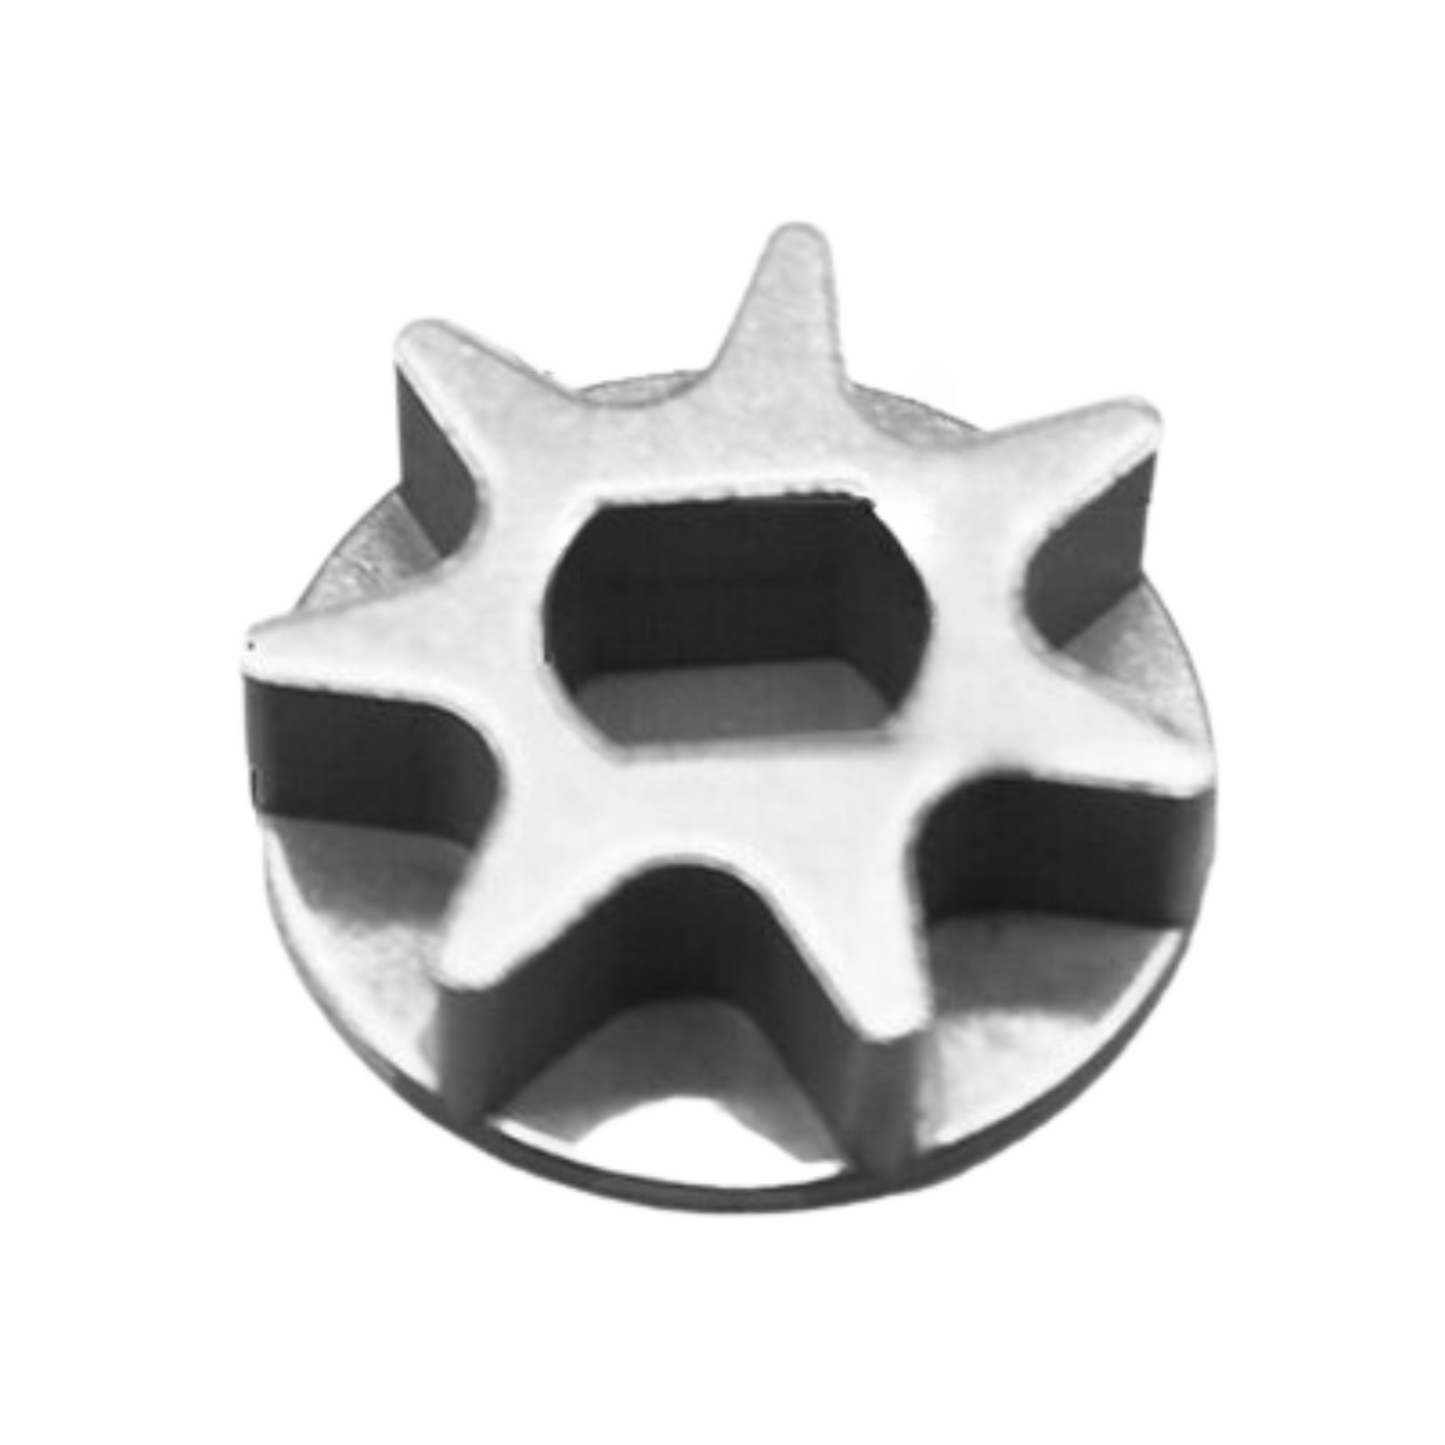 Pignon de tronçonneuse pour tronçonneuse E 5016-6018 3-6 dents 9x12 -8x10 -10 -14 -16mm-5-pk